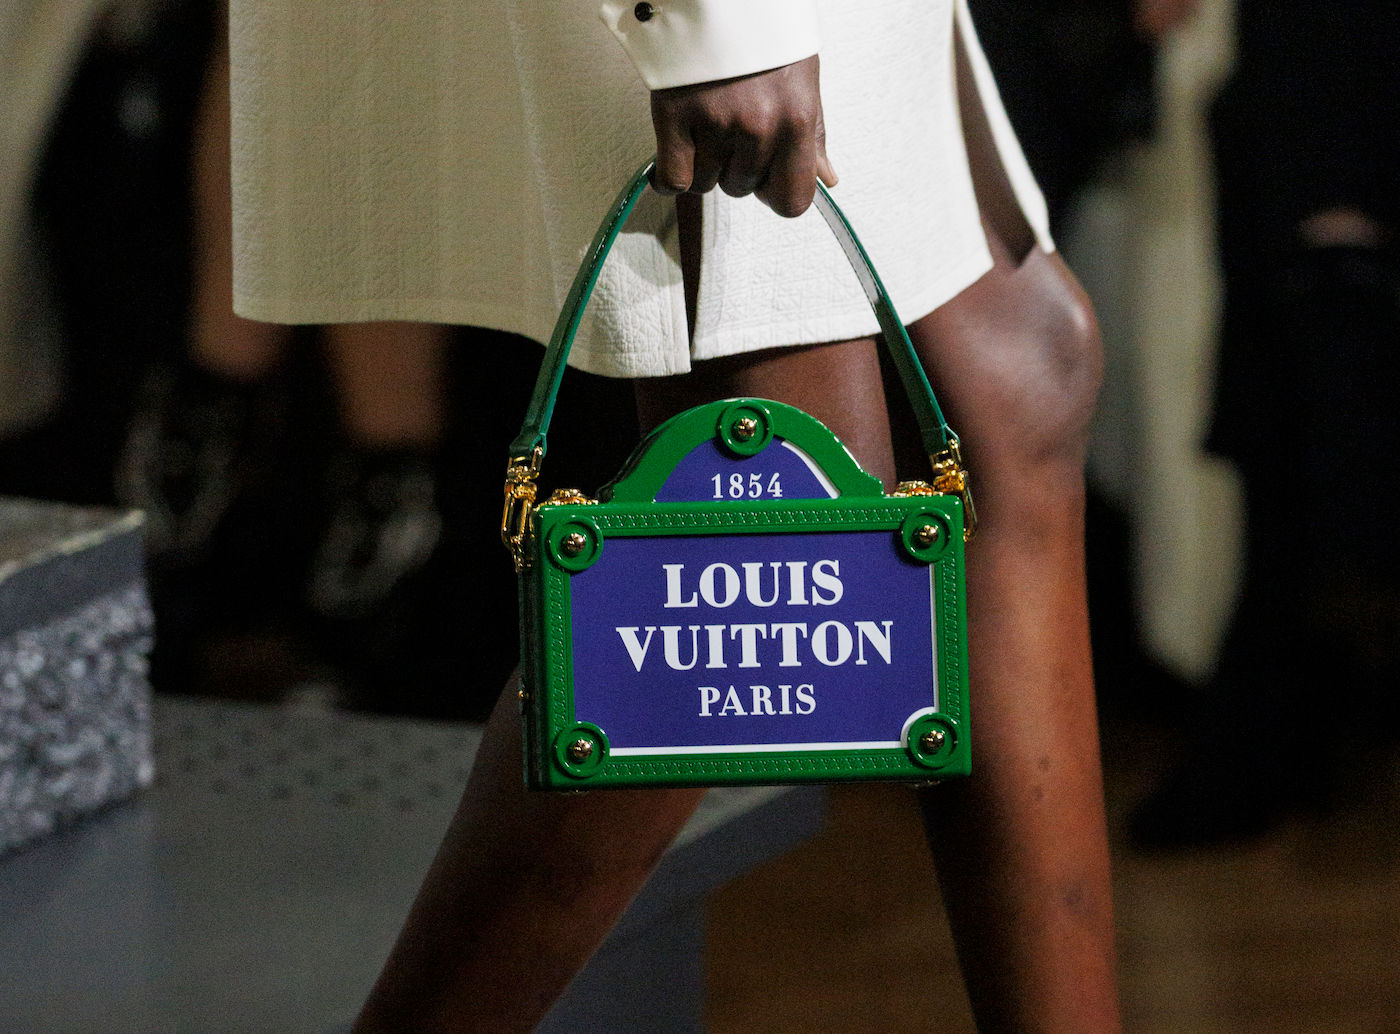 Louis Vuitton Fall Winter Bag Collection